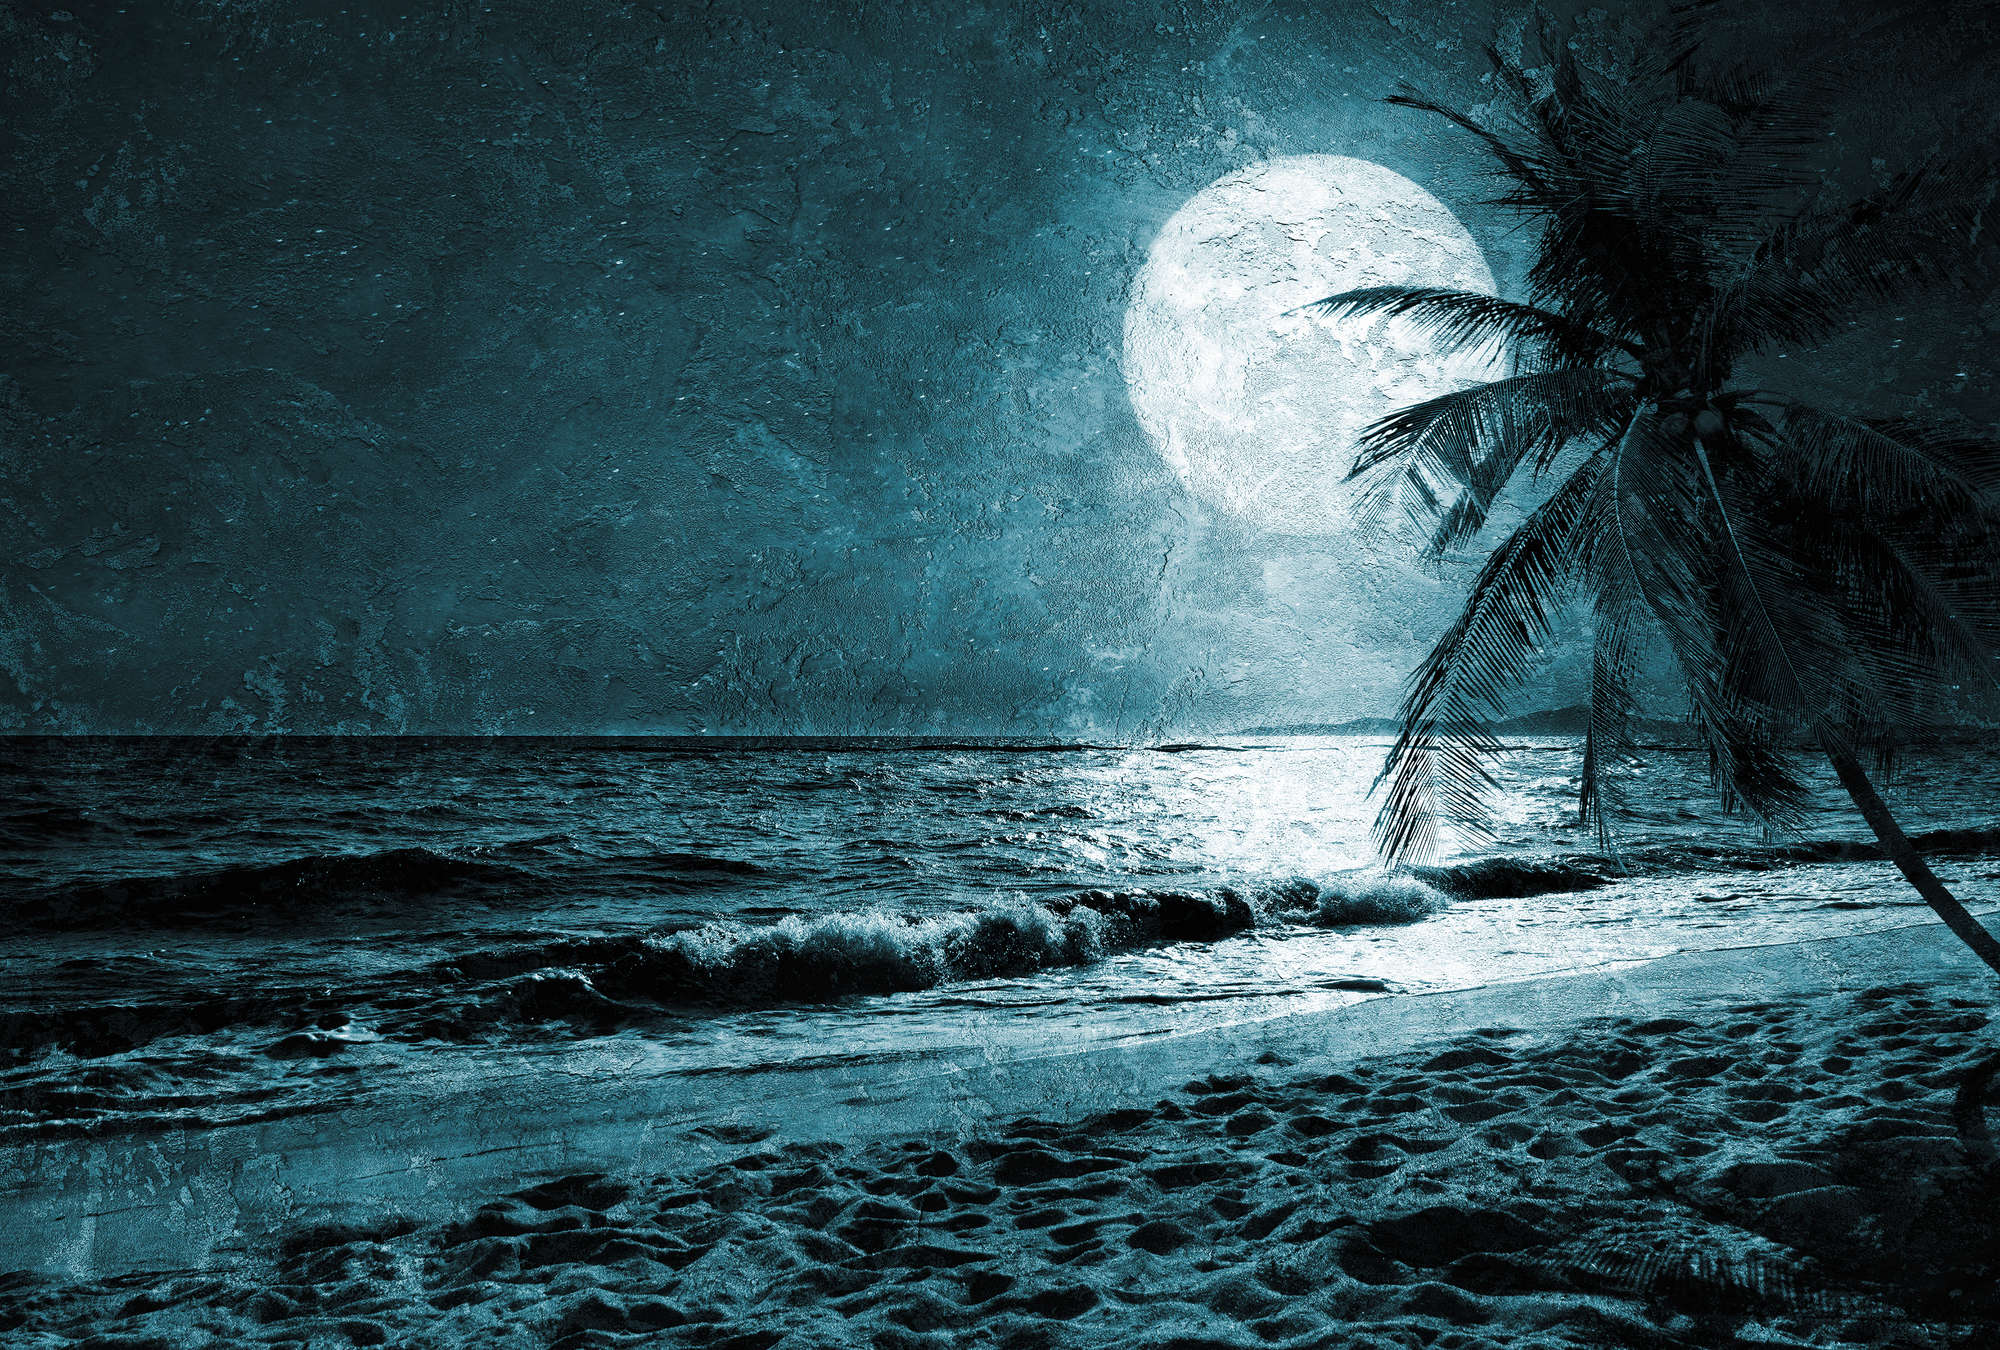             Strand Fototapete mit Palmen & Meer bei Nacht – Blau, Weiß, Schwarz
        